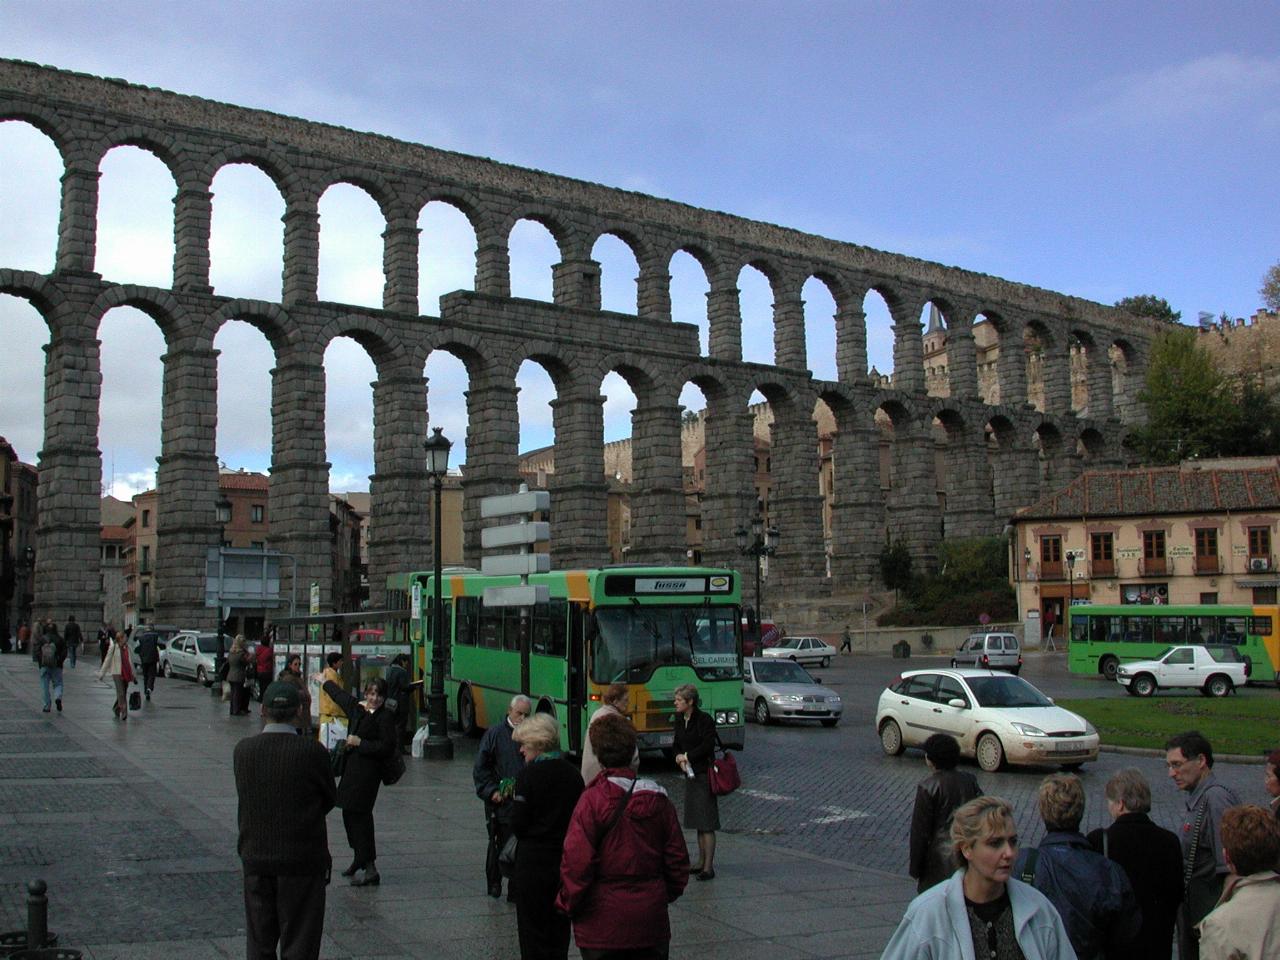 Roman viaduct/aqueduct at Segovia